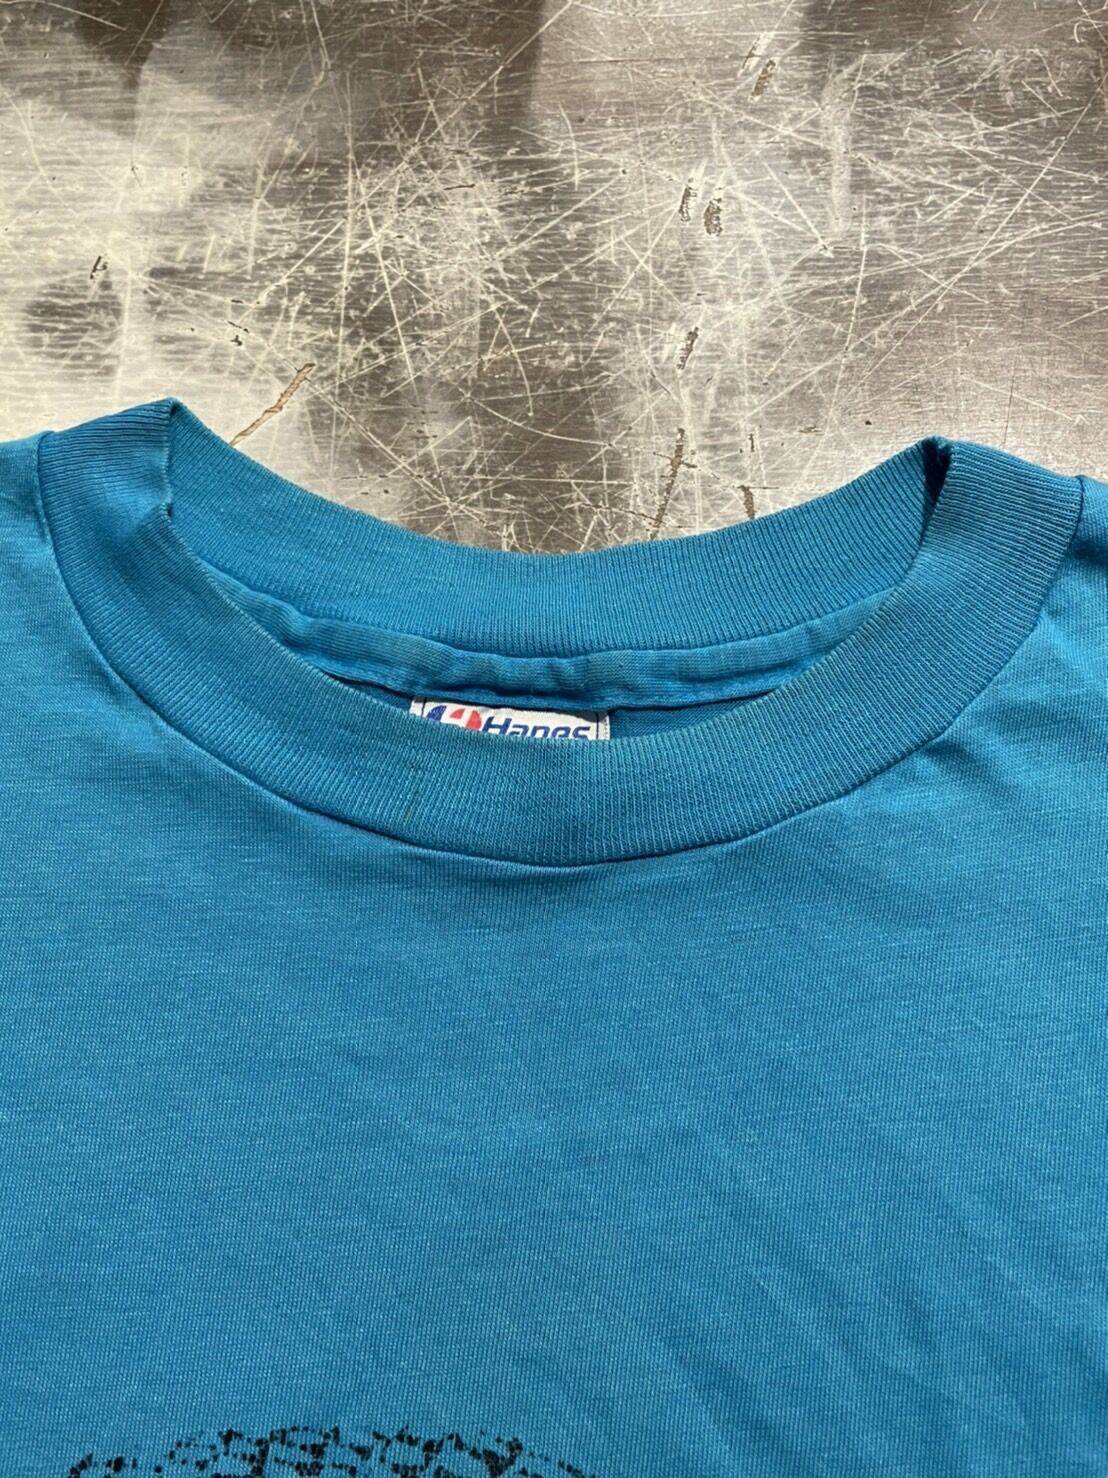 Hanes 80's アニマルプリントtシャツ アメリカ製 XLサイズ ブルー